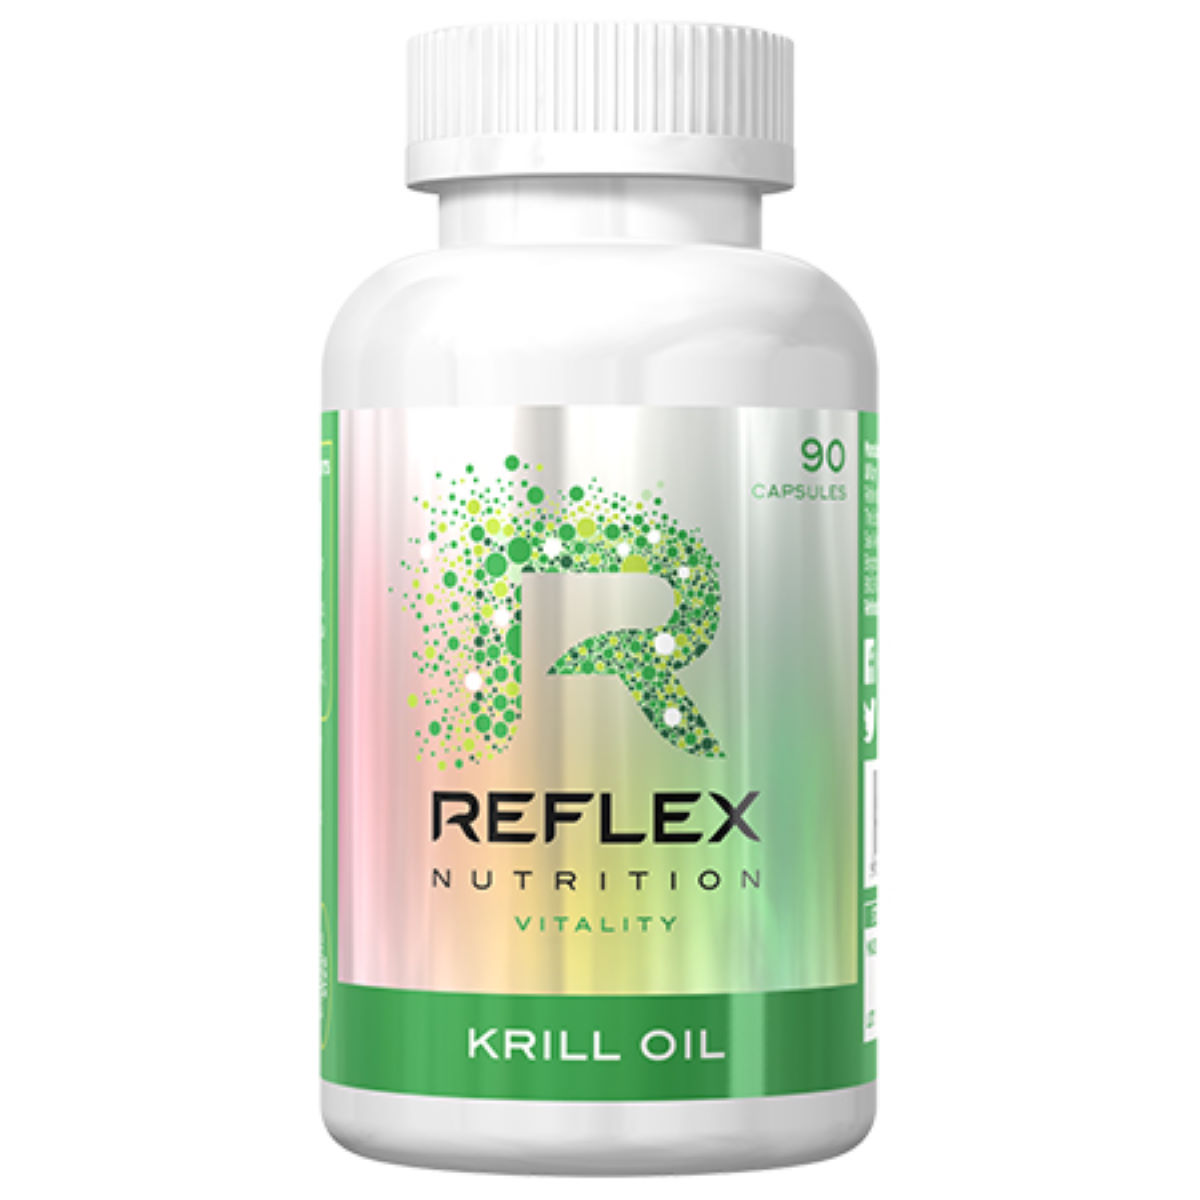 Reflex Krill Oil (90 Capsules) - Ácidos grasos omega